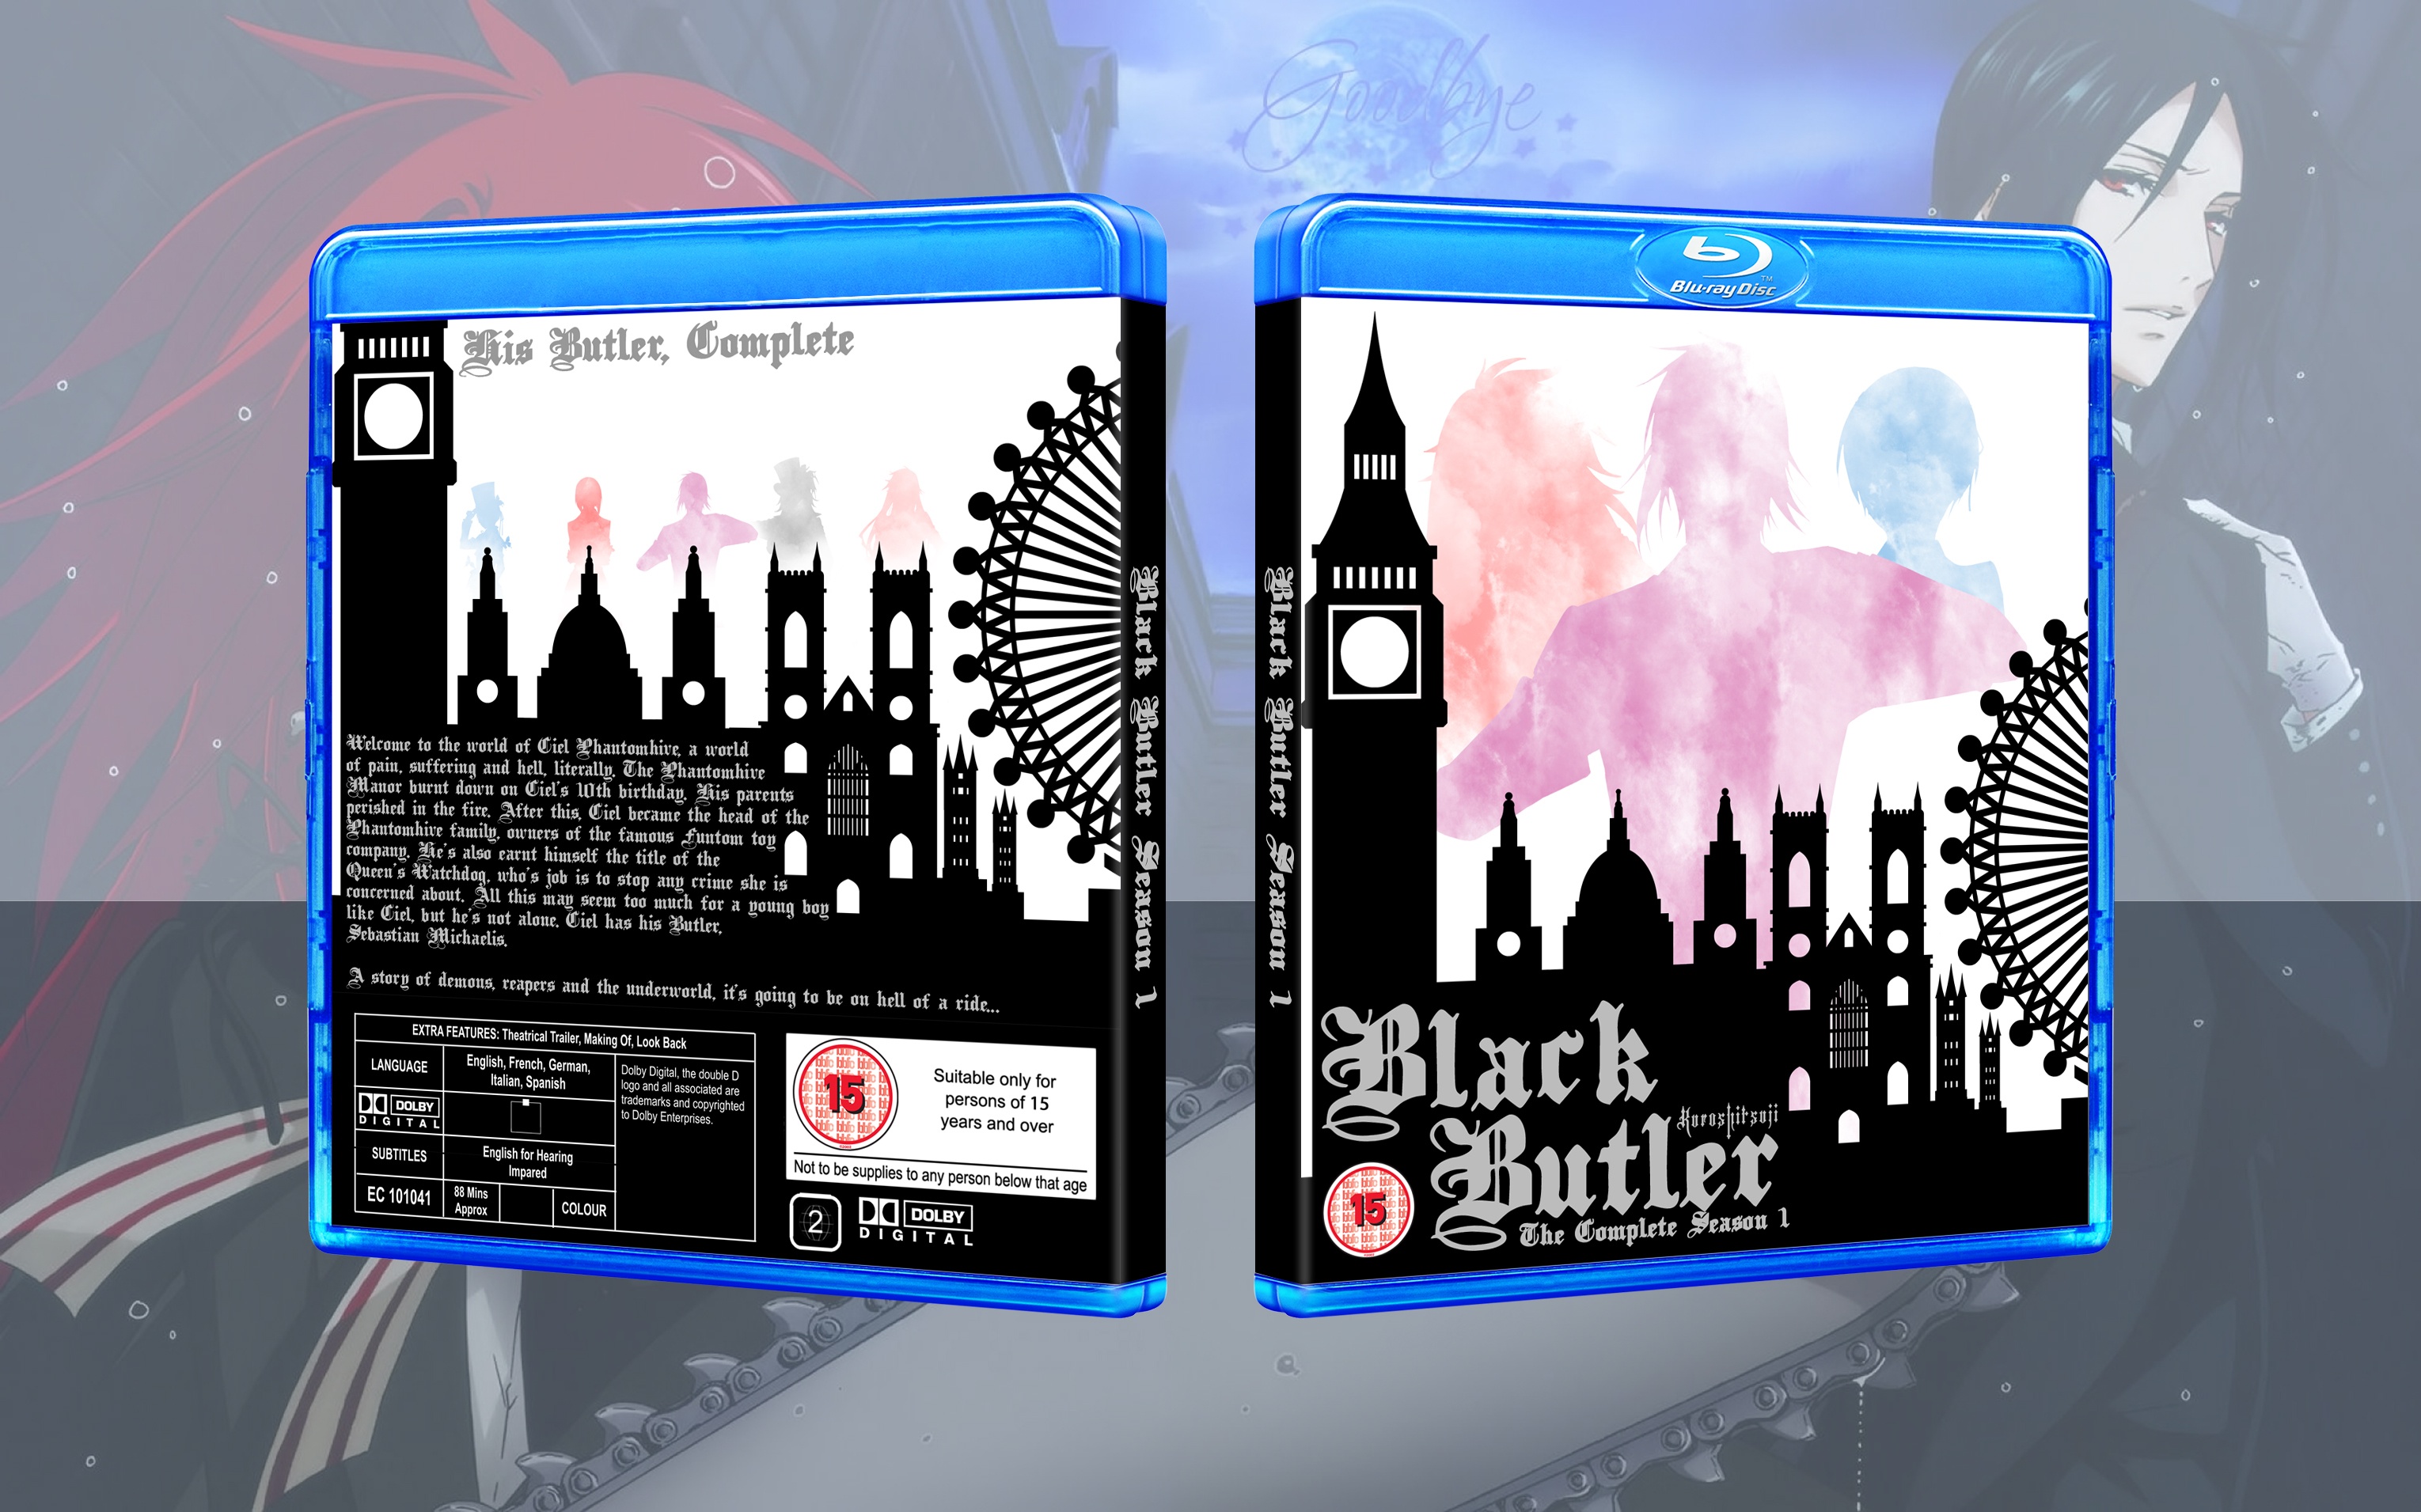 Black Butler: Season 1 box cover